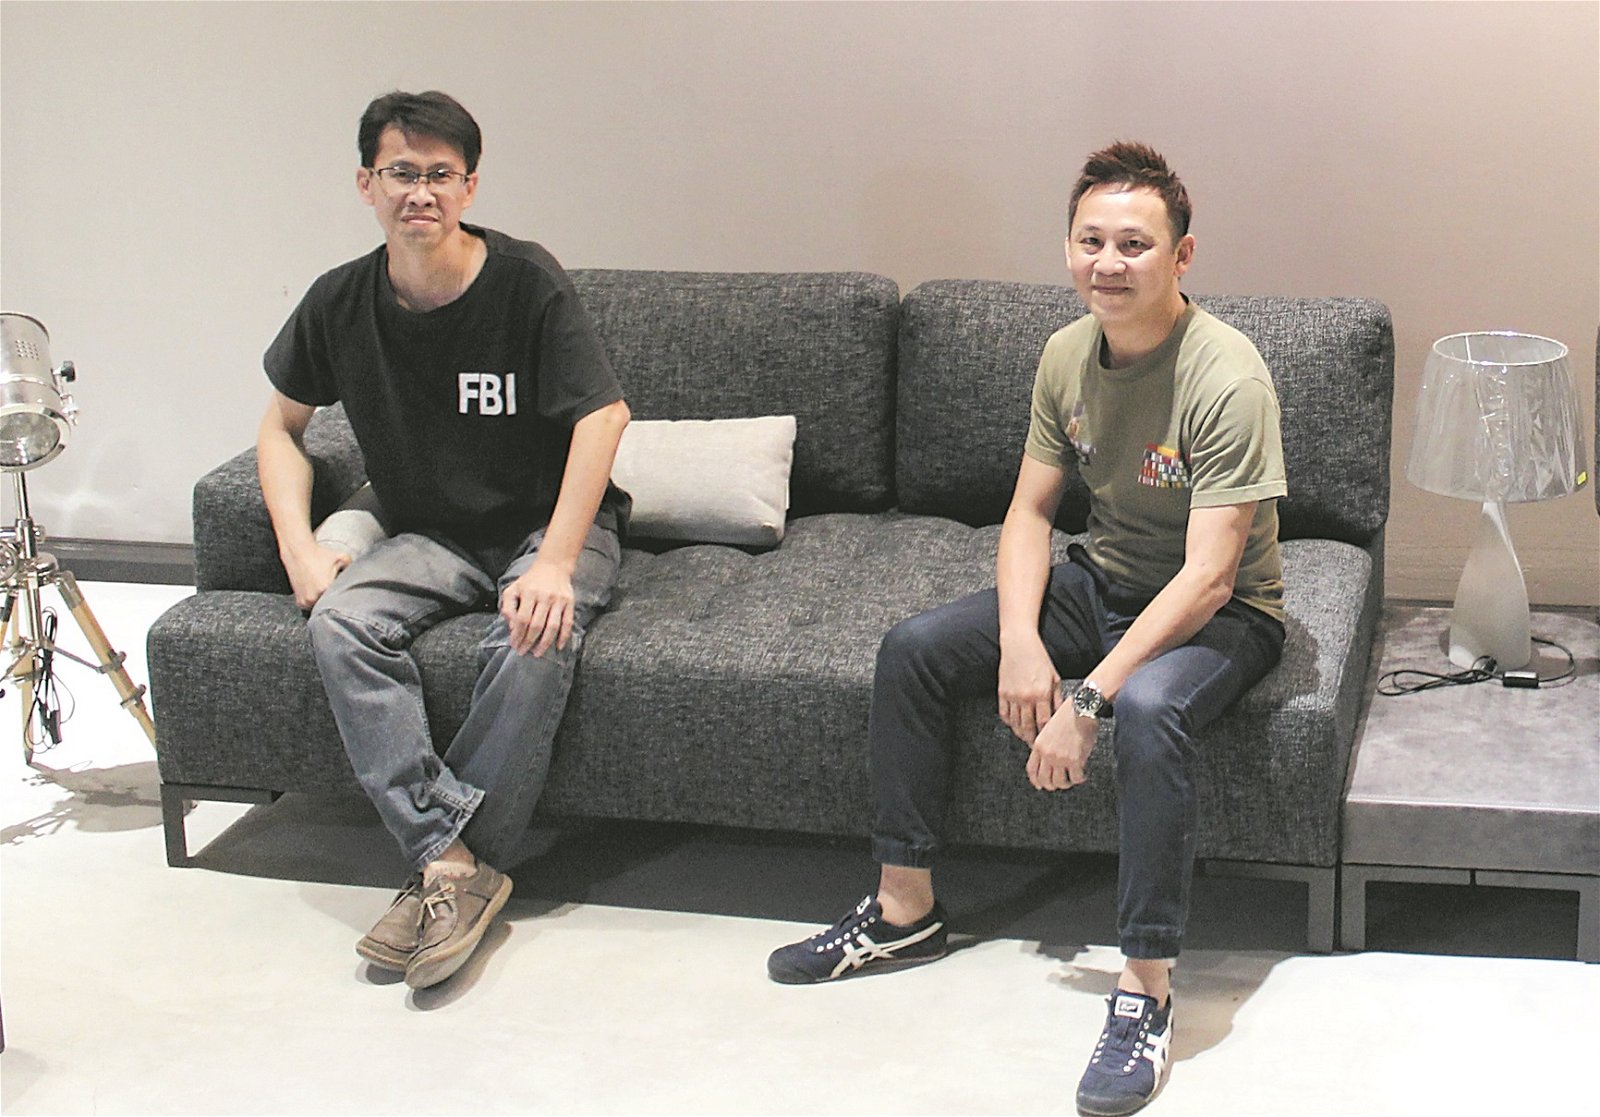 老大林忠义（ 左） 负责生产 线，老二林忠杰（右）则负责品 牌创办、营销及设计等，兄弟合作无间打造“SIT ON IT”品牌沙发。